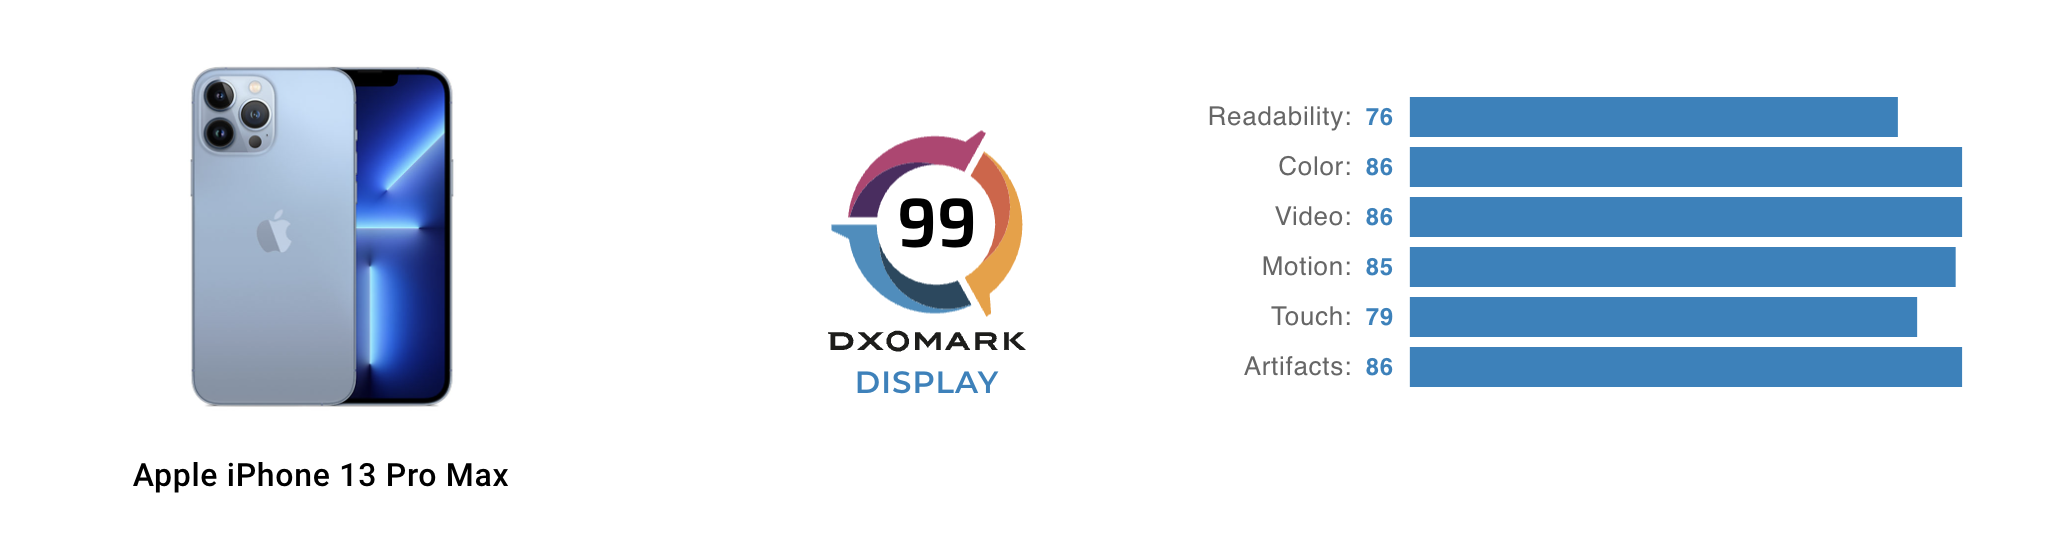 Ça se confirme : l'écran de l'iPhone 13 Pro Max est le meilleur du marché  selon DXOMARK aussi